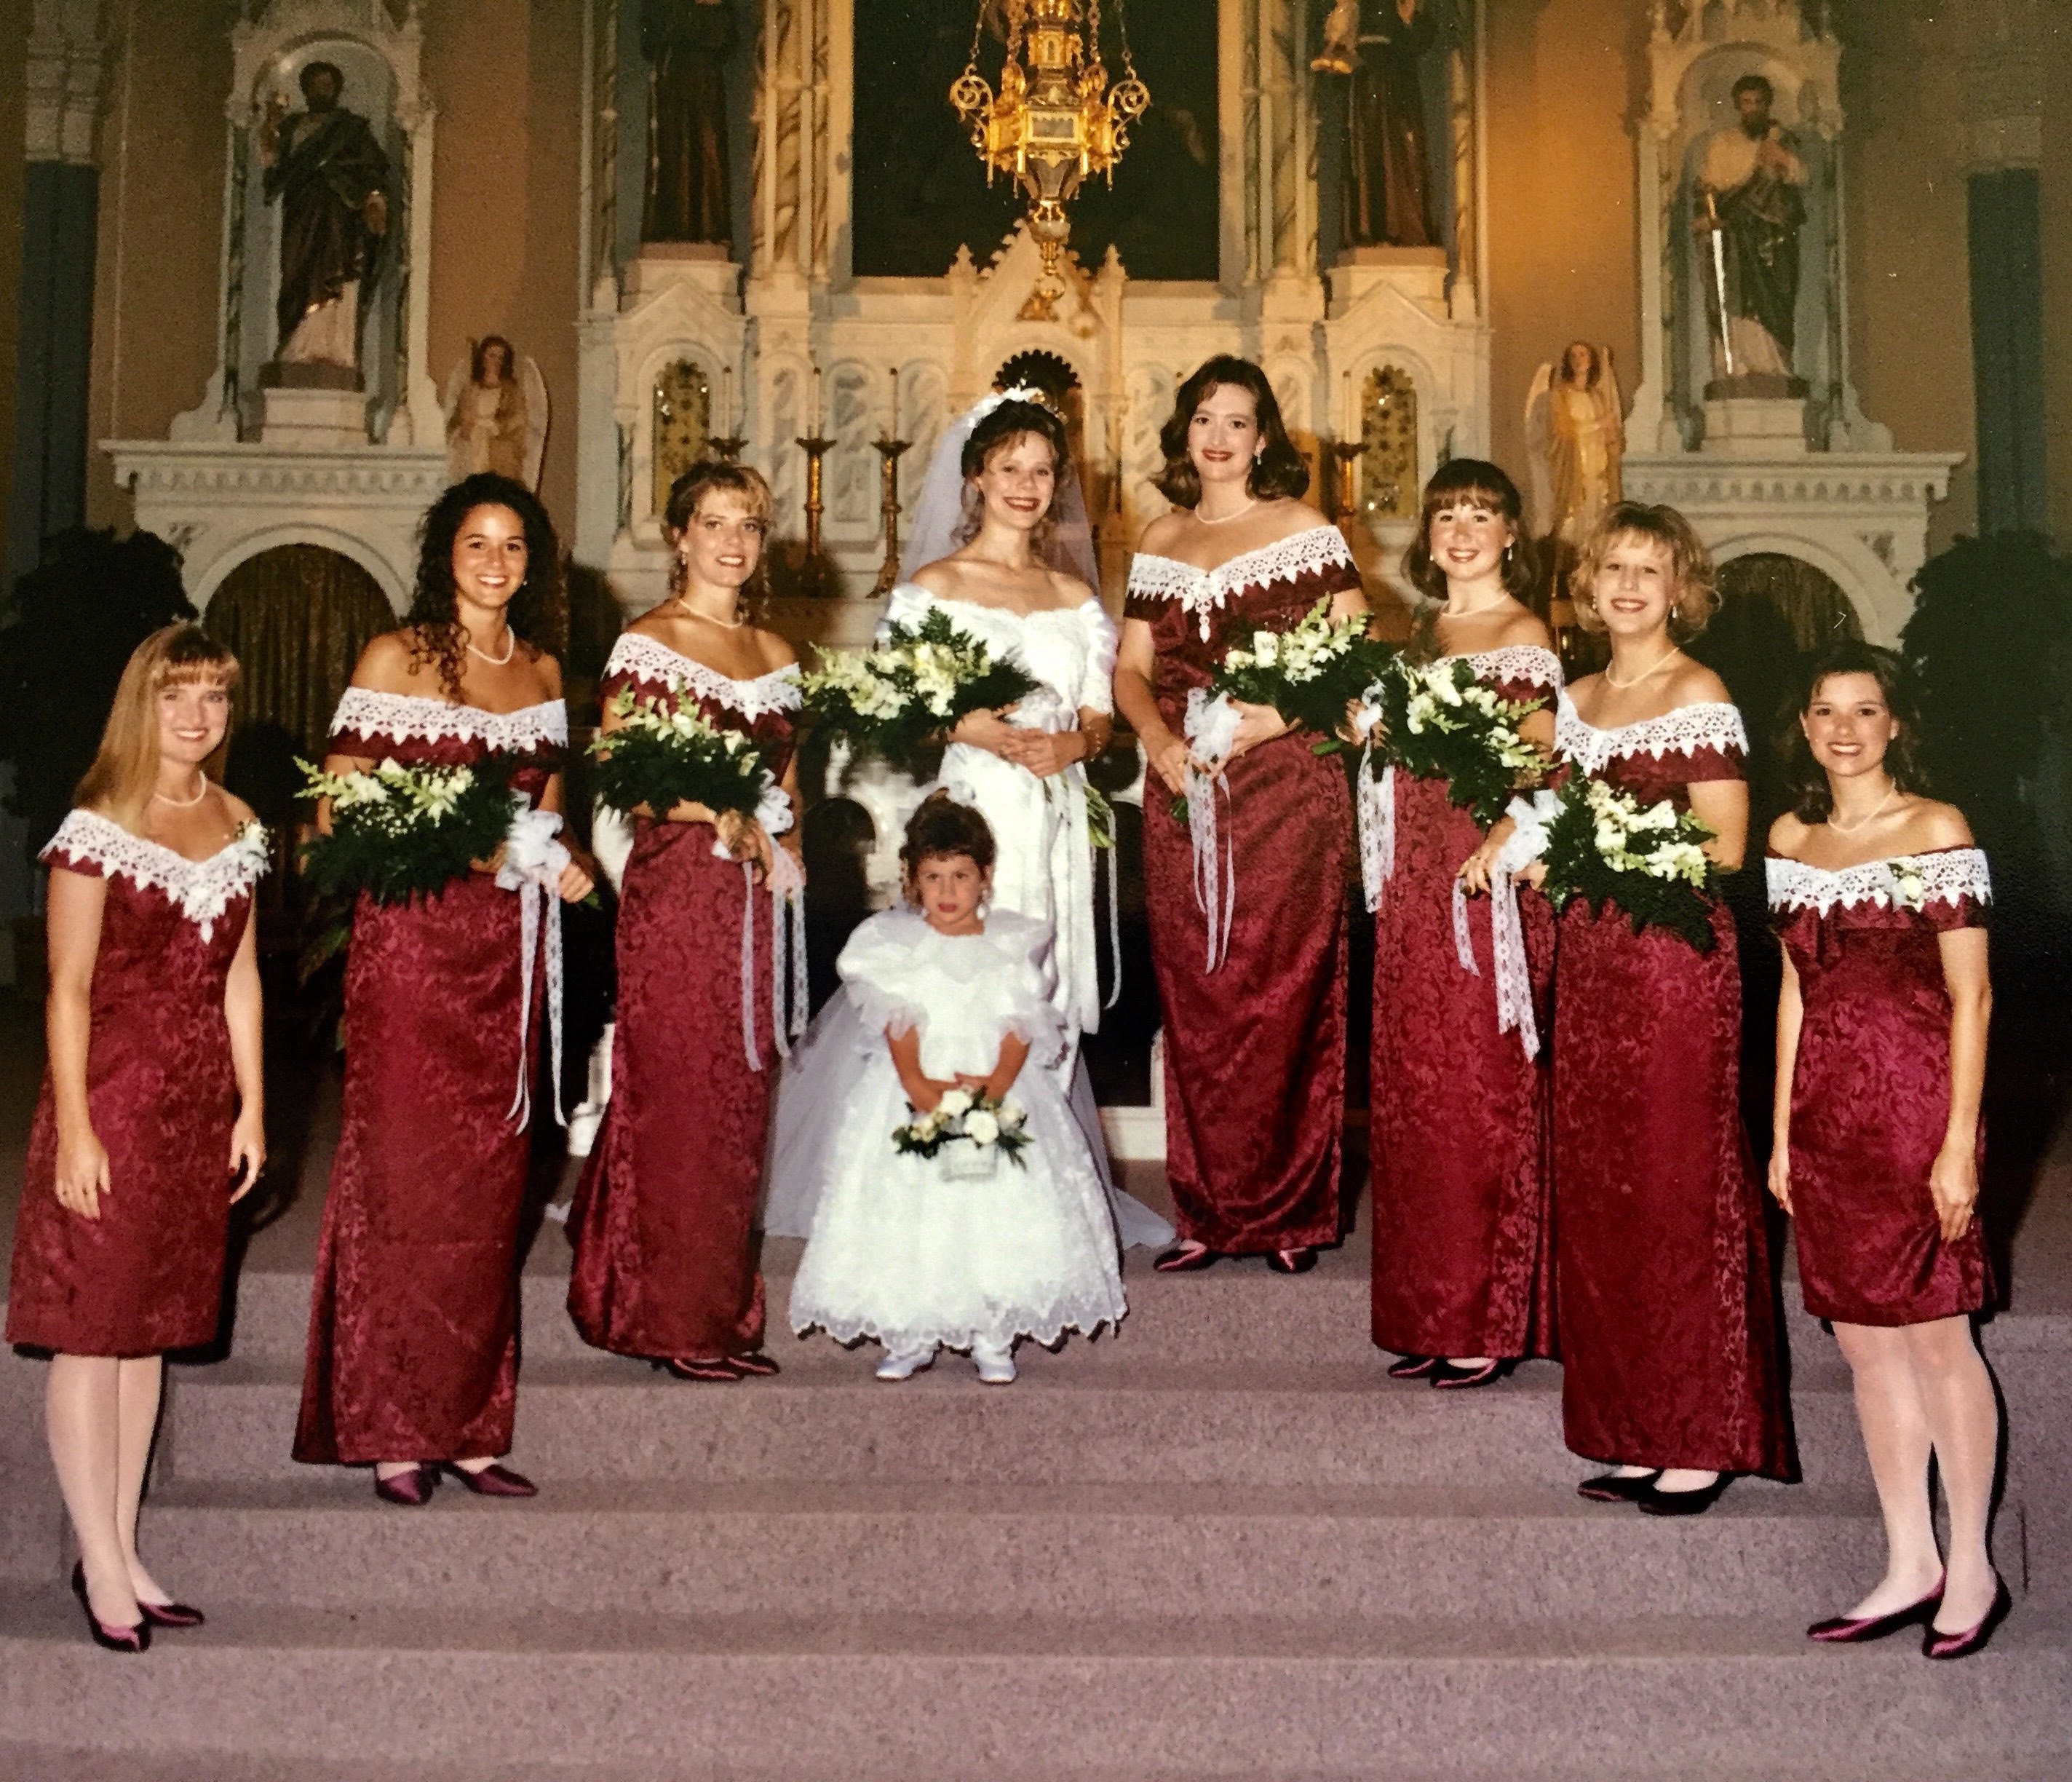 90's bridesmaid dresses